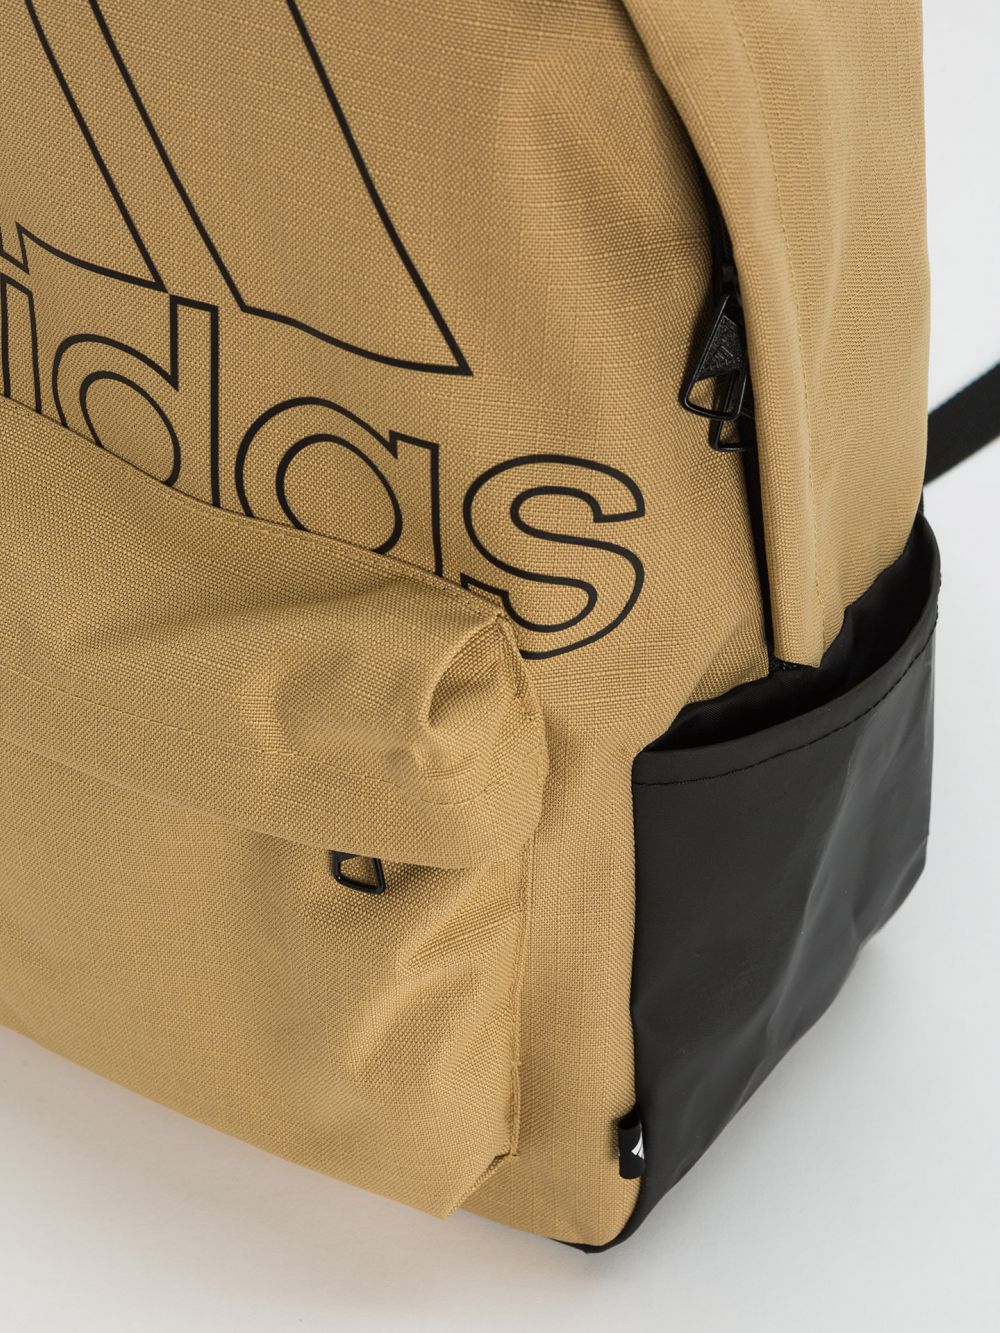 תיק גב Adidas בצבע בז’ ולוגג